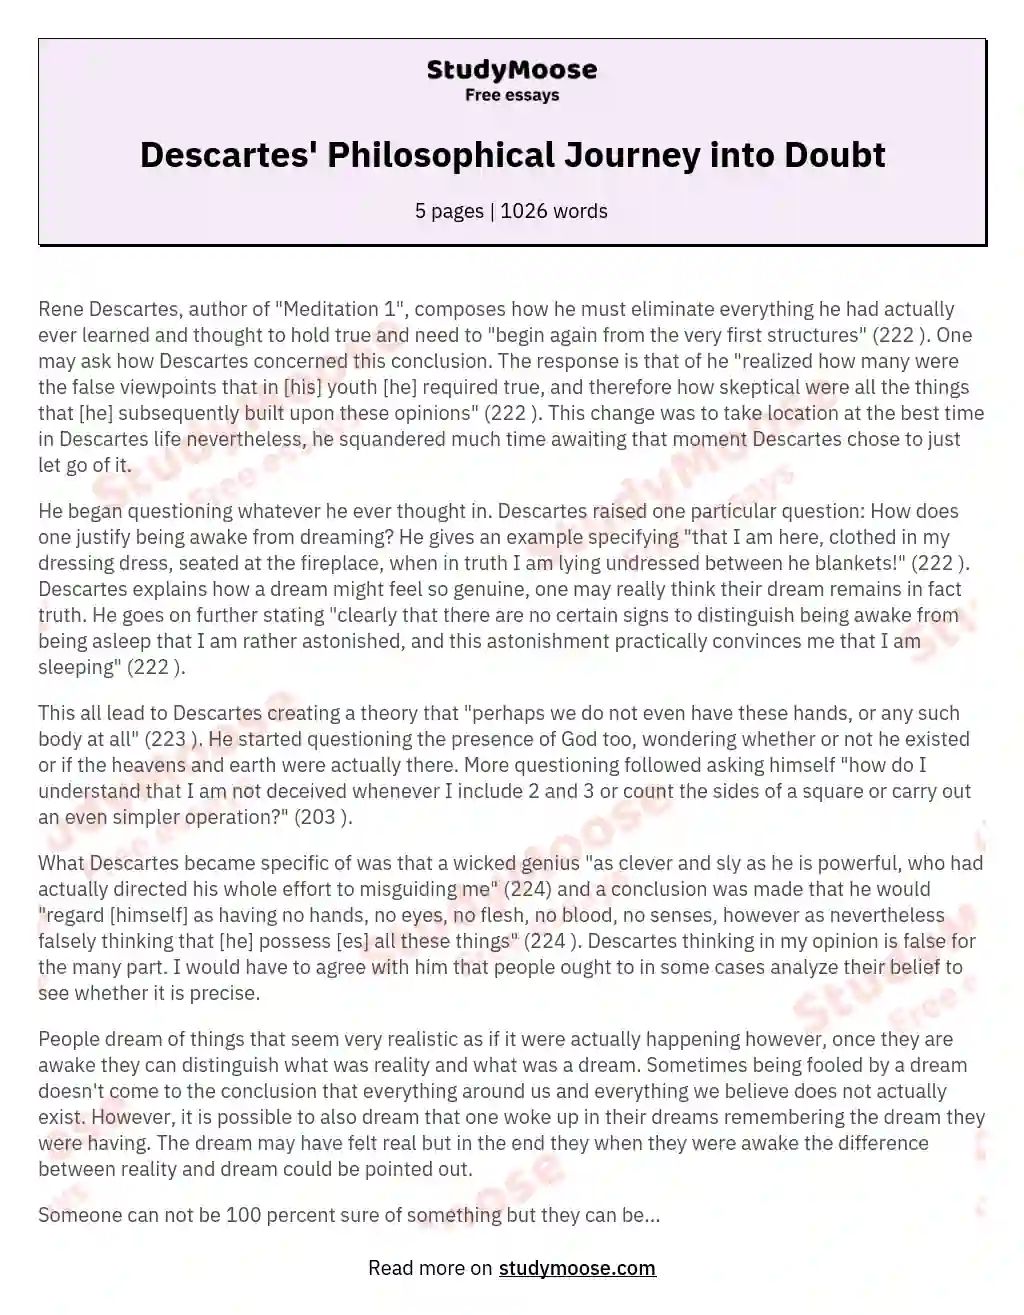 Descartes' Philosophical Journey into Doubt essay